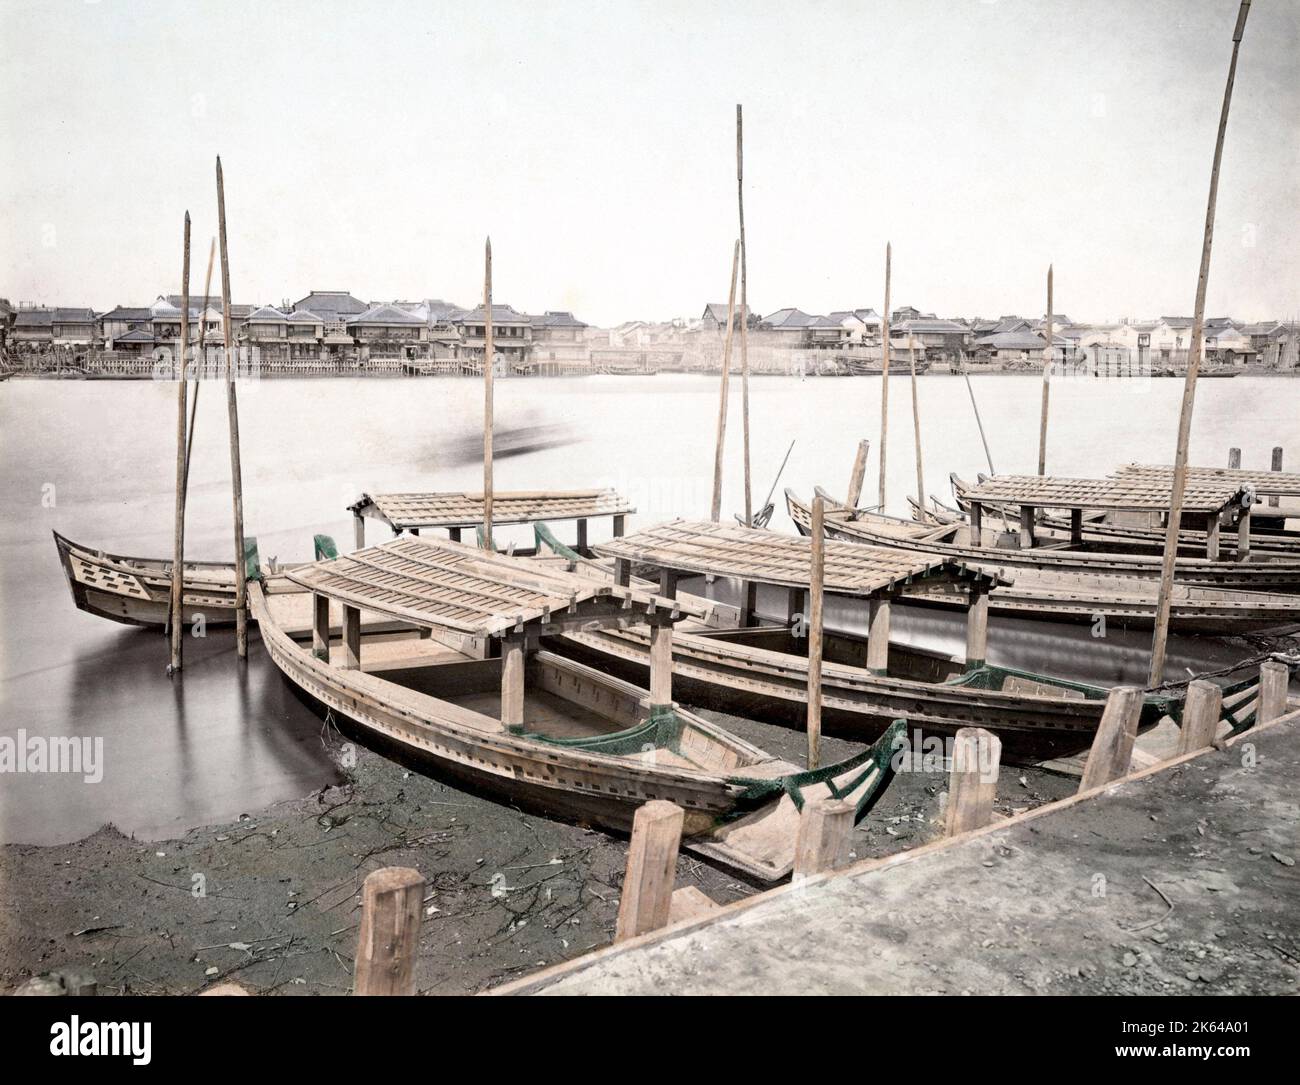 c. 1880s Japan - boats tied up, probably Yokohama Stock Photo